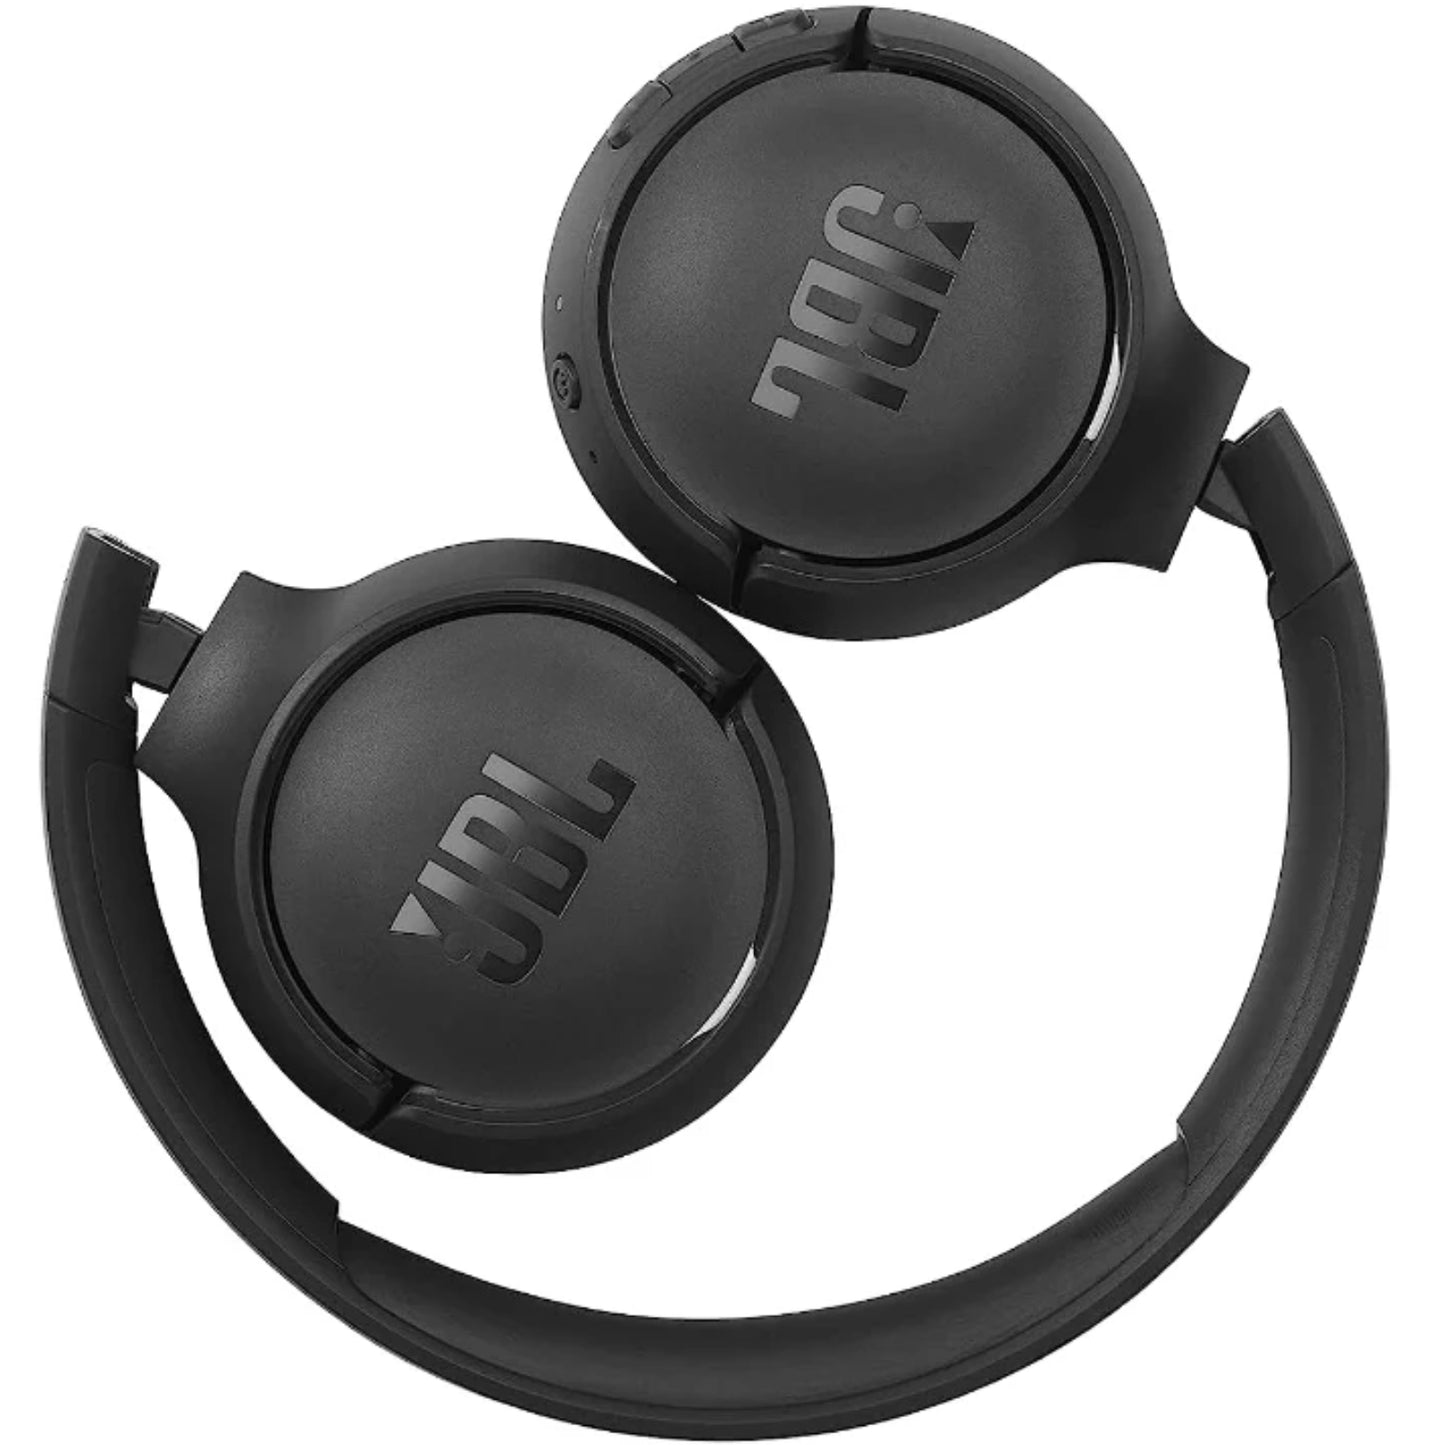 JBL TUNE 510BTNC Wireless Headphones Black